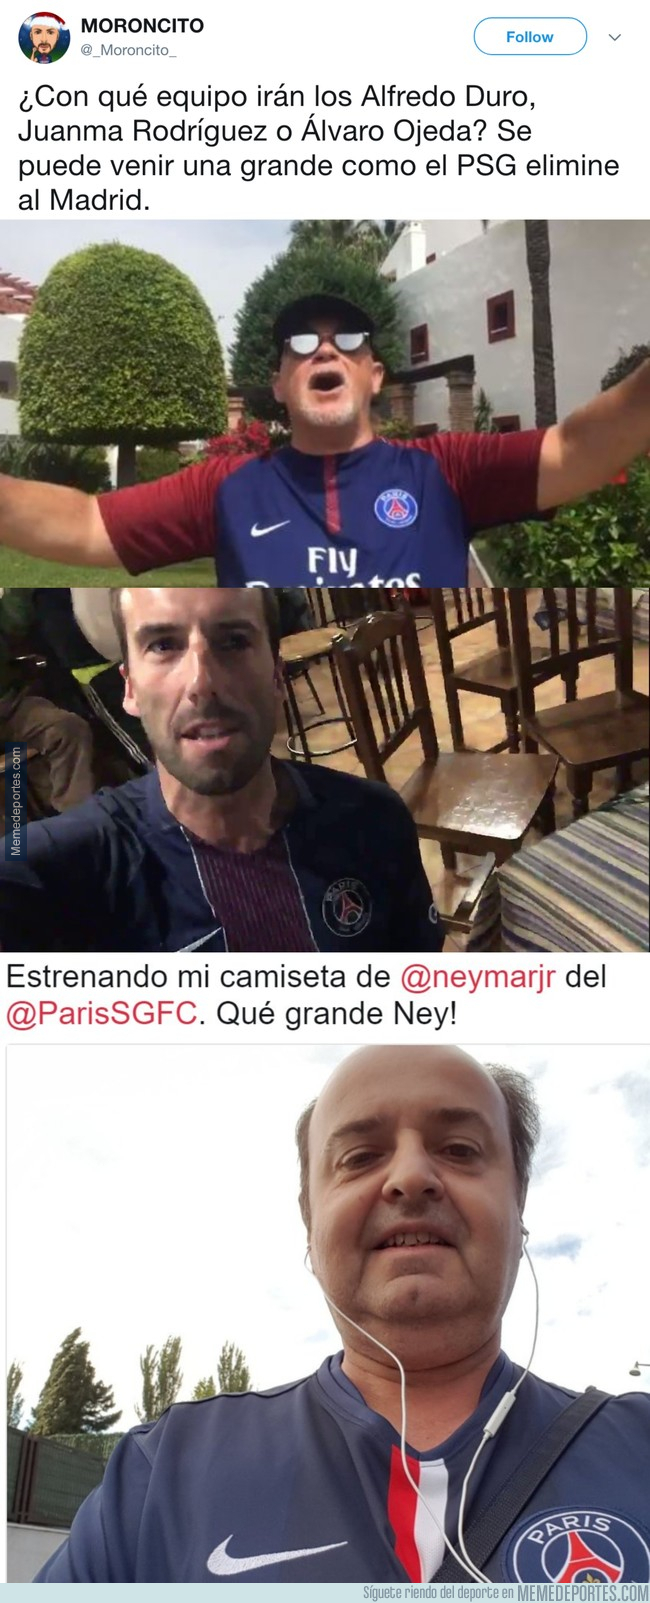 1011472 - Internet va a explotar, ¿qué harán estos 3 madridistas hasta la médula con sus camisetas del PSG?